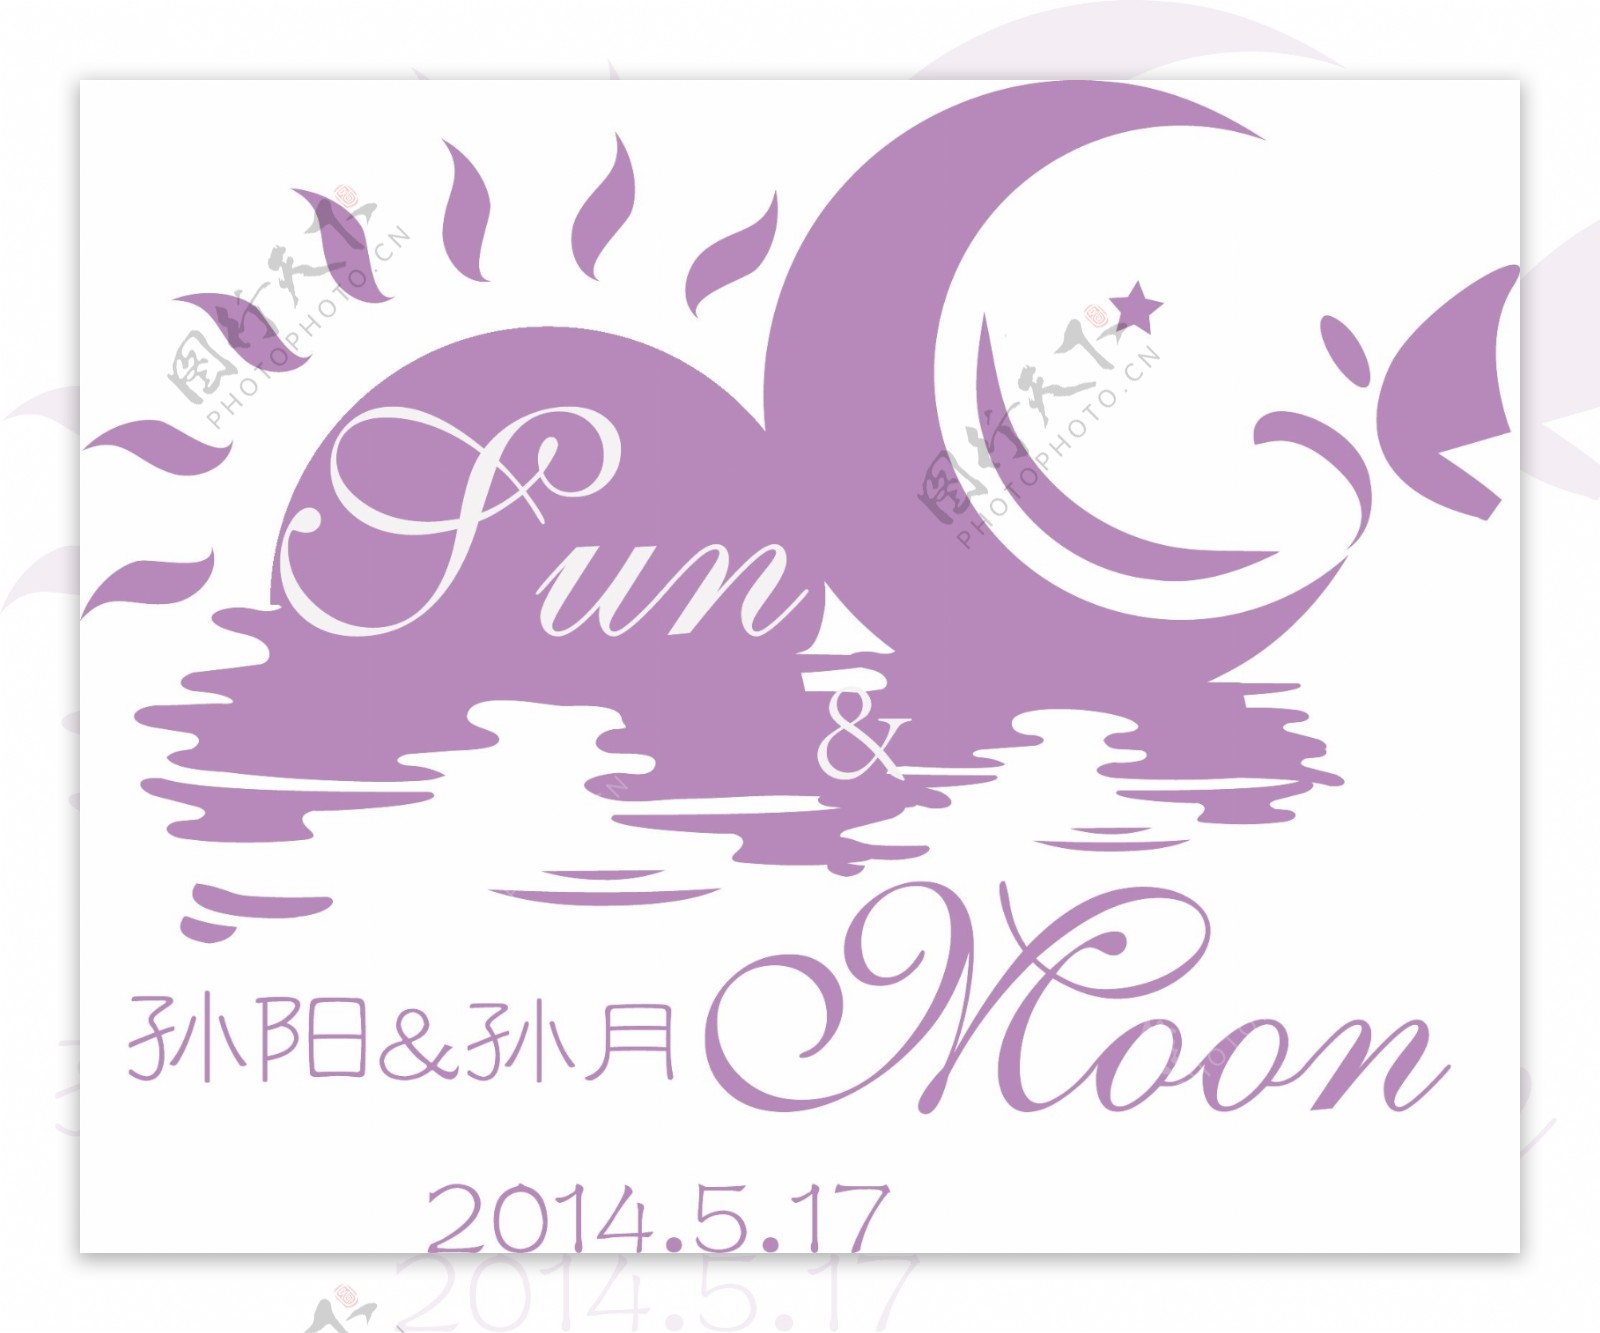 婚礼logo太阳月亮